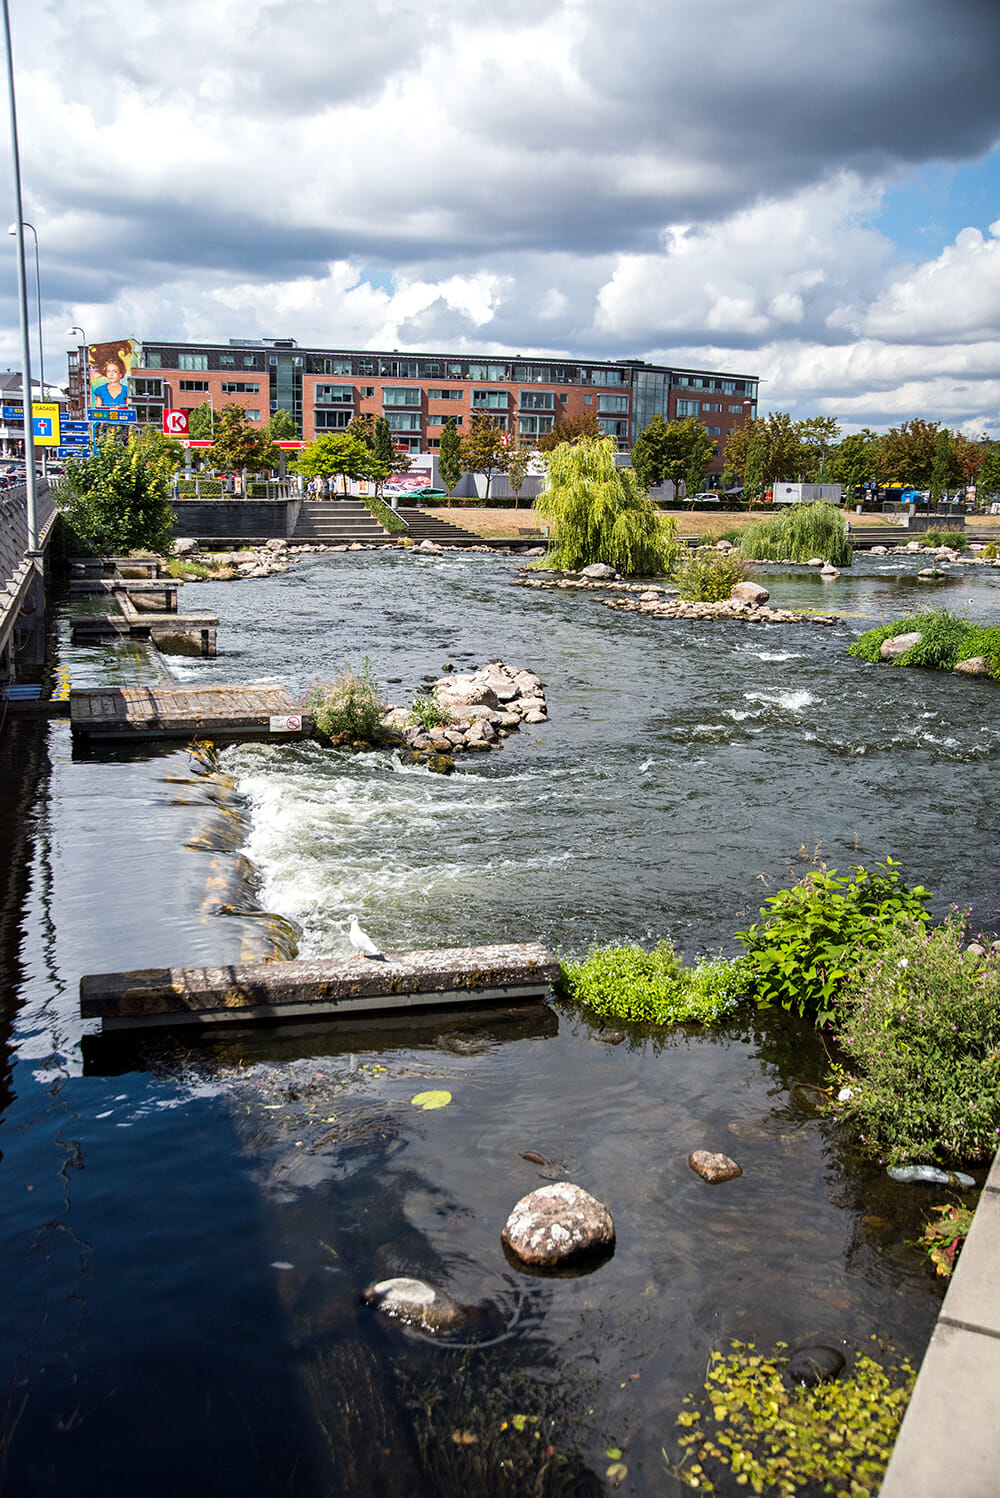 River in Silkeborg, Denmark